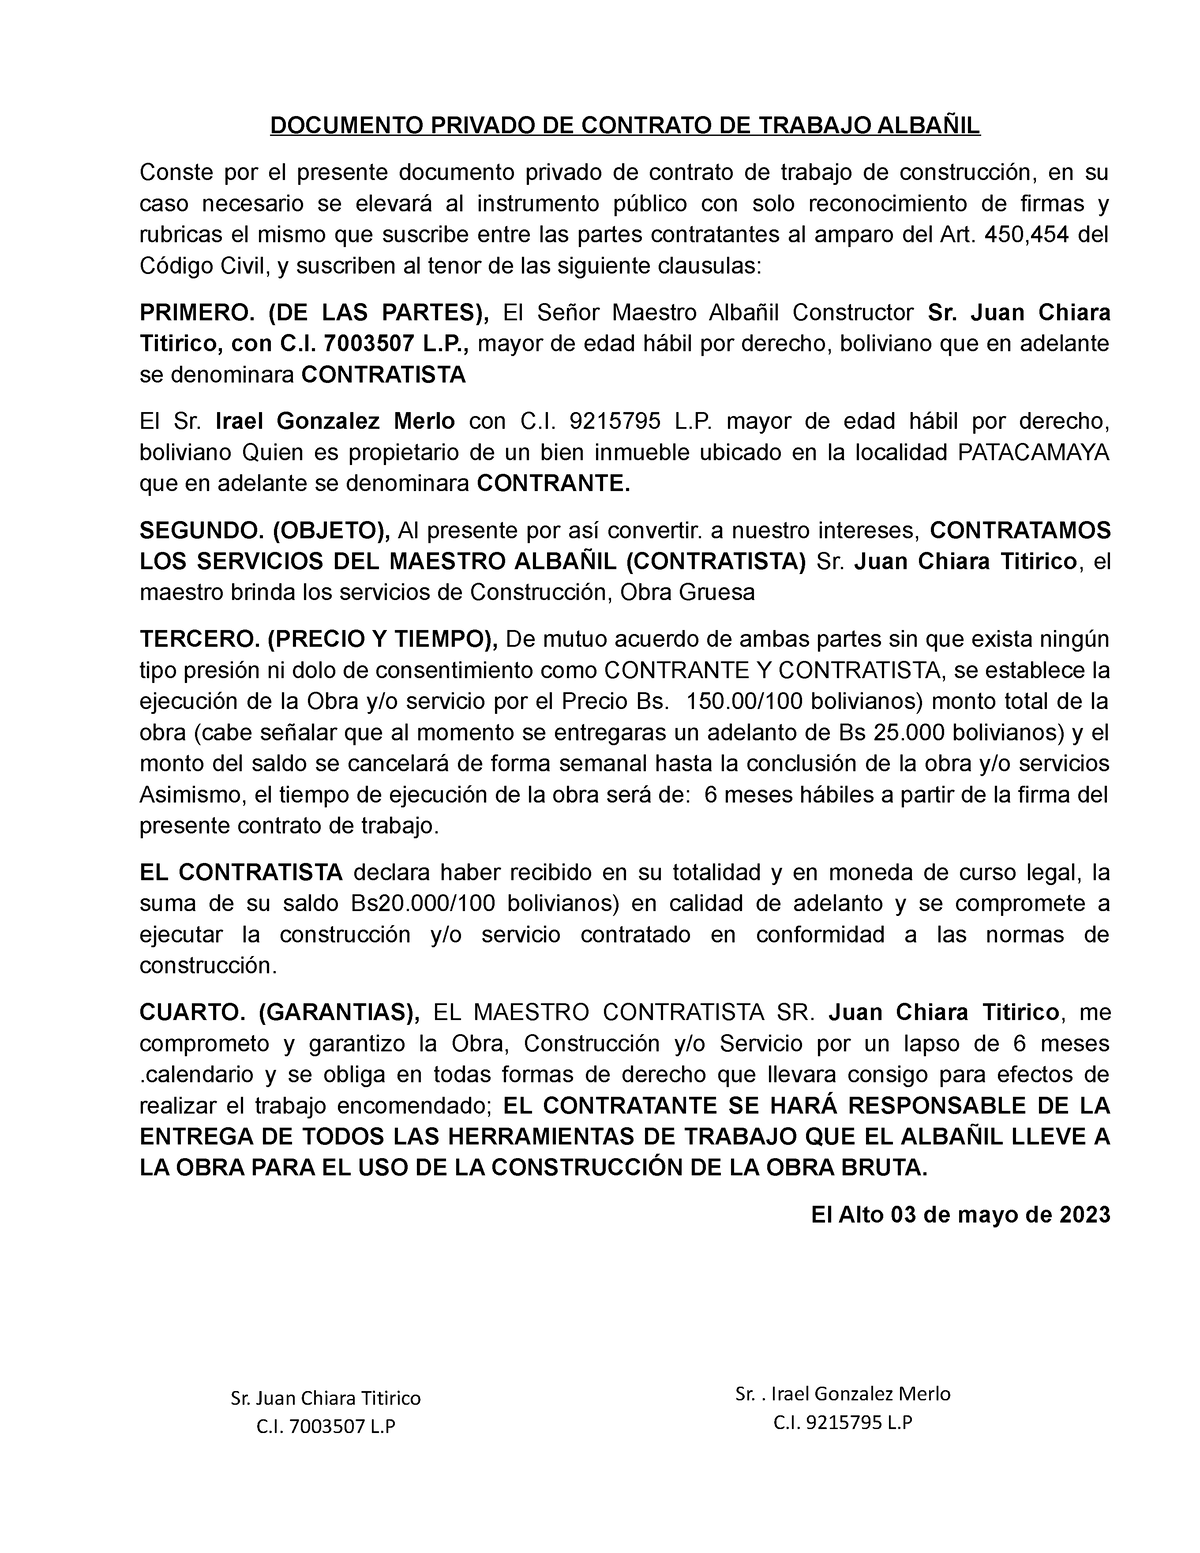 Documento Privado De Contrato De Trabajo Albañil Chiara Documento Privado De Contrato De 5604